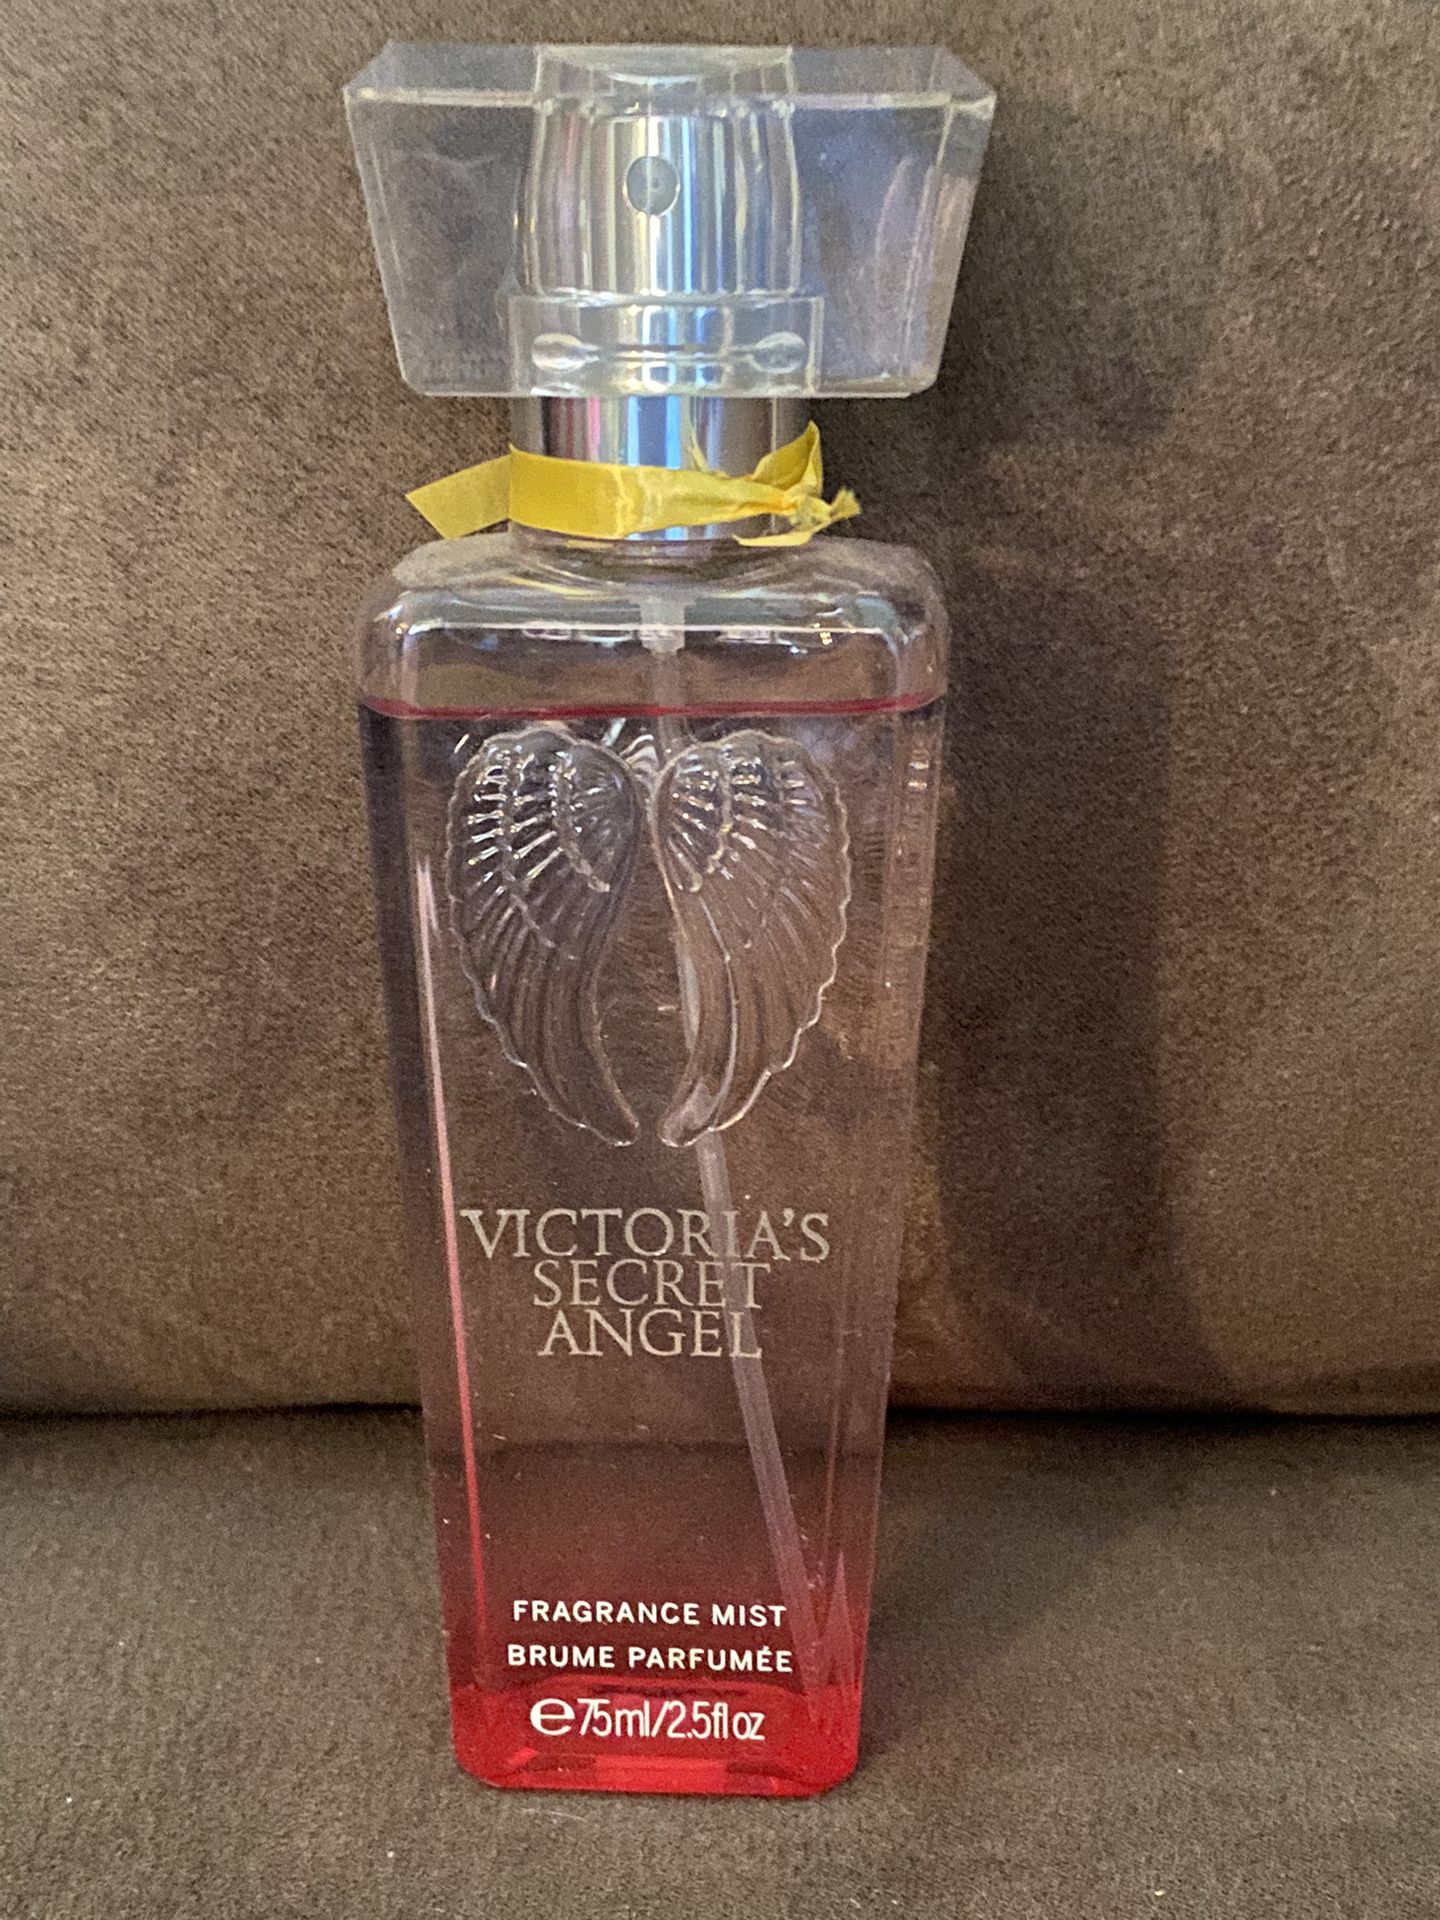 Victoria’s Secret Angel Fragrance Mist 2.5 fl oz.  95% full